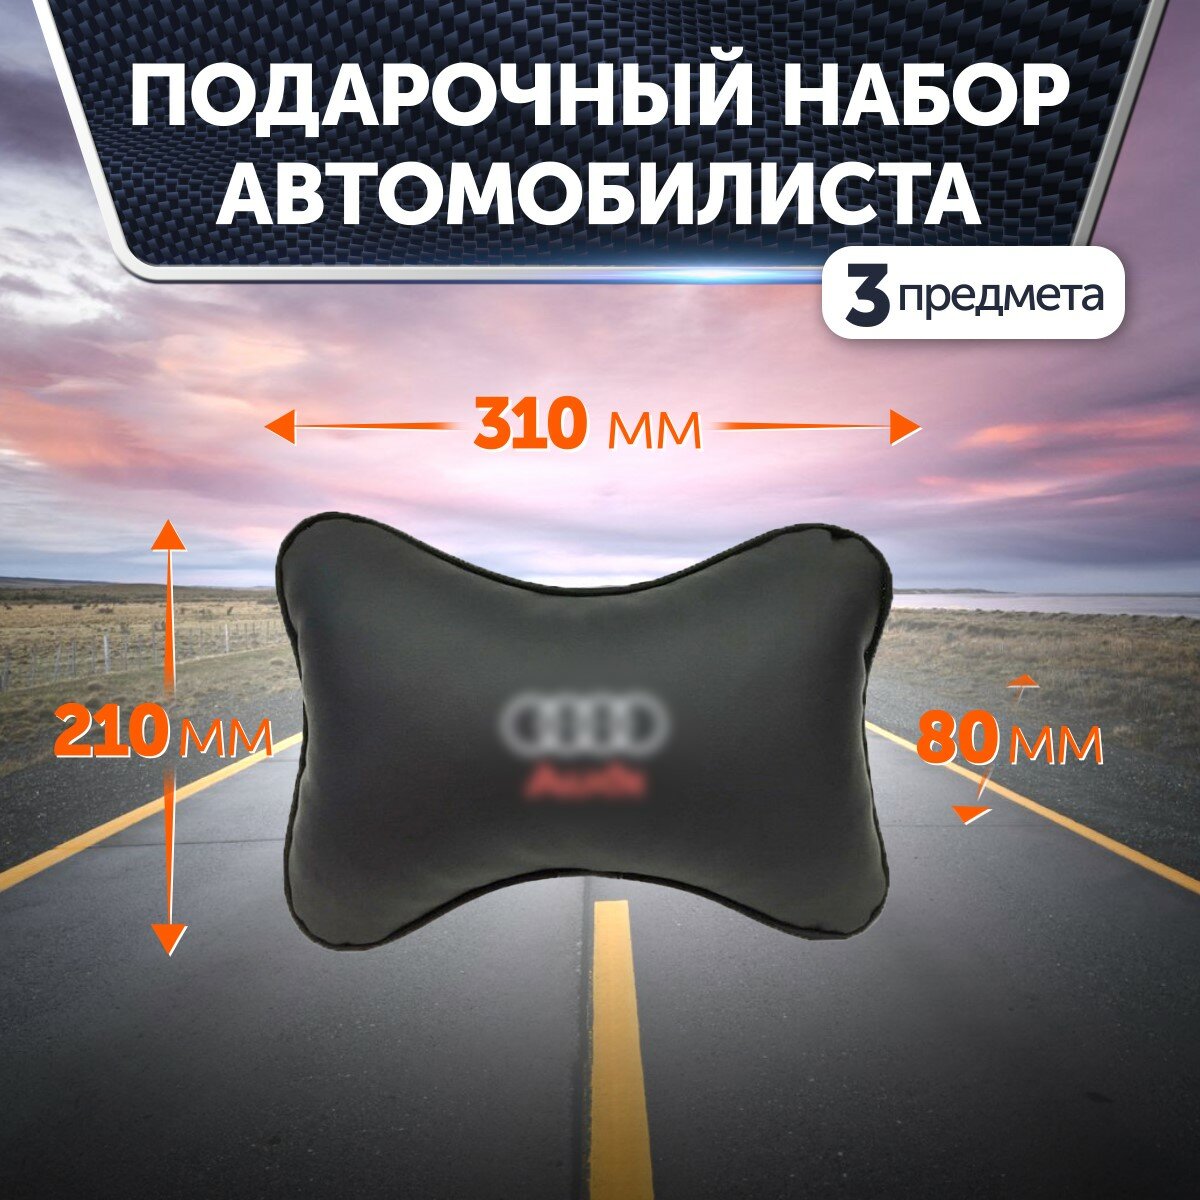 Подарочный набор автомобилиста для Audi (Ауди): термосумка, подушка на подголовник, подушка